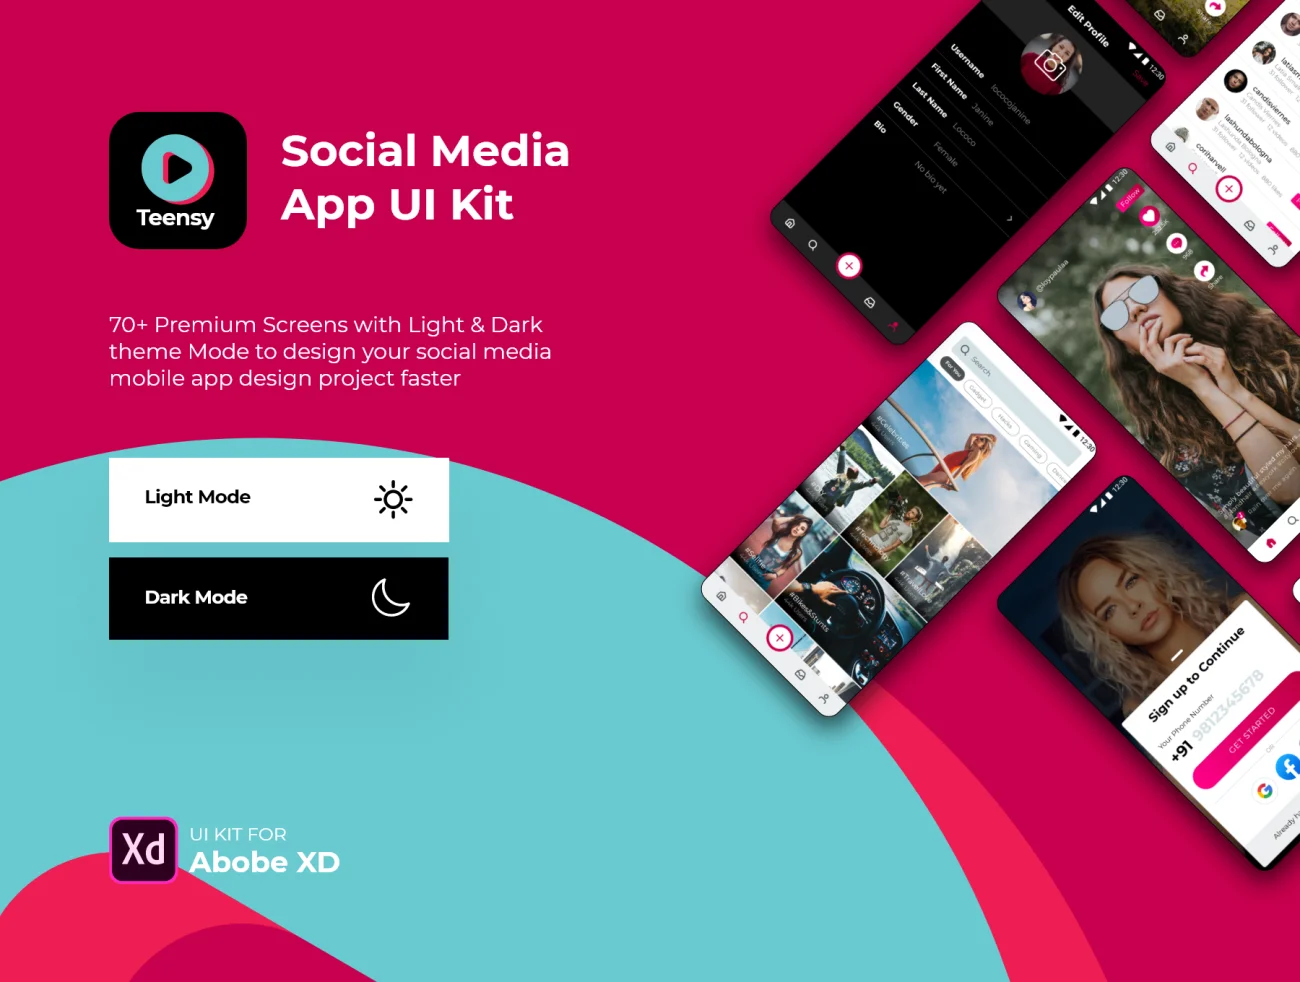 Teensy - Social Media App UI Kit 社交媒体应用上传图片上传短视频UI设计套件-UI/UX、ui套件、列表、图表、应用、日历、登录页、社交、聊天、表单-到位啦UI